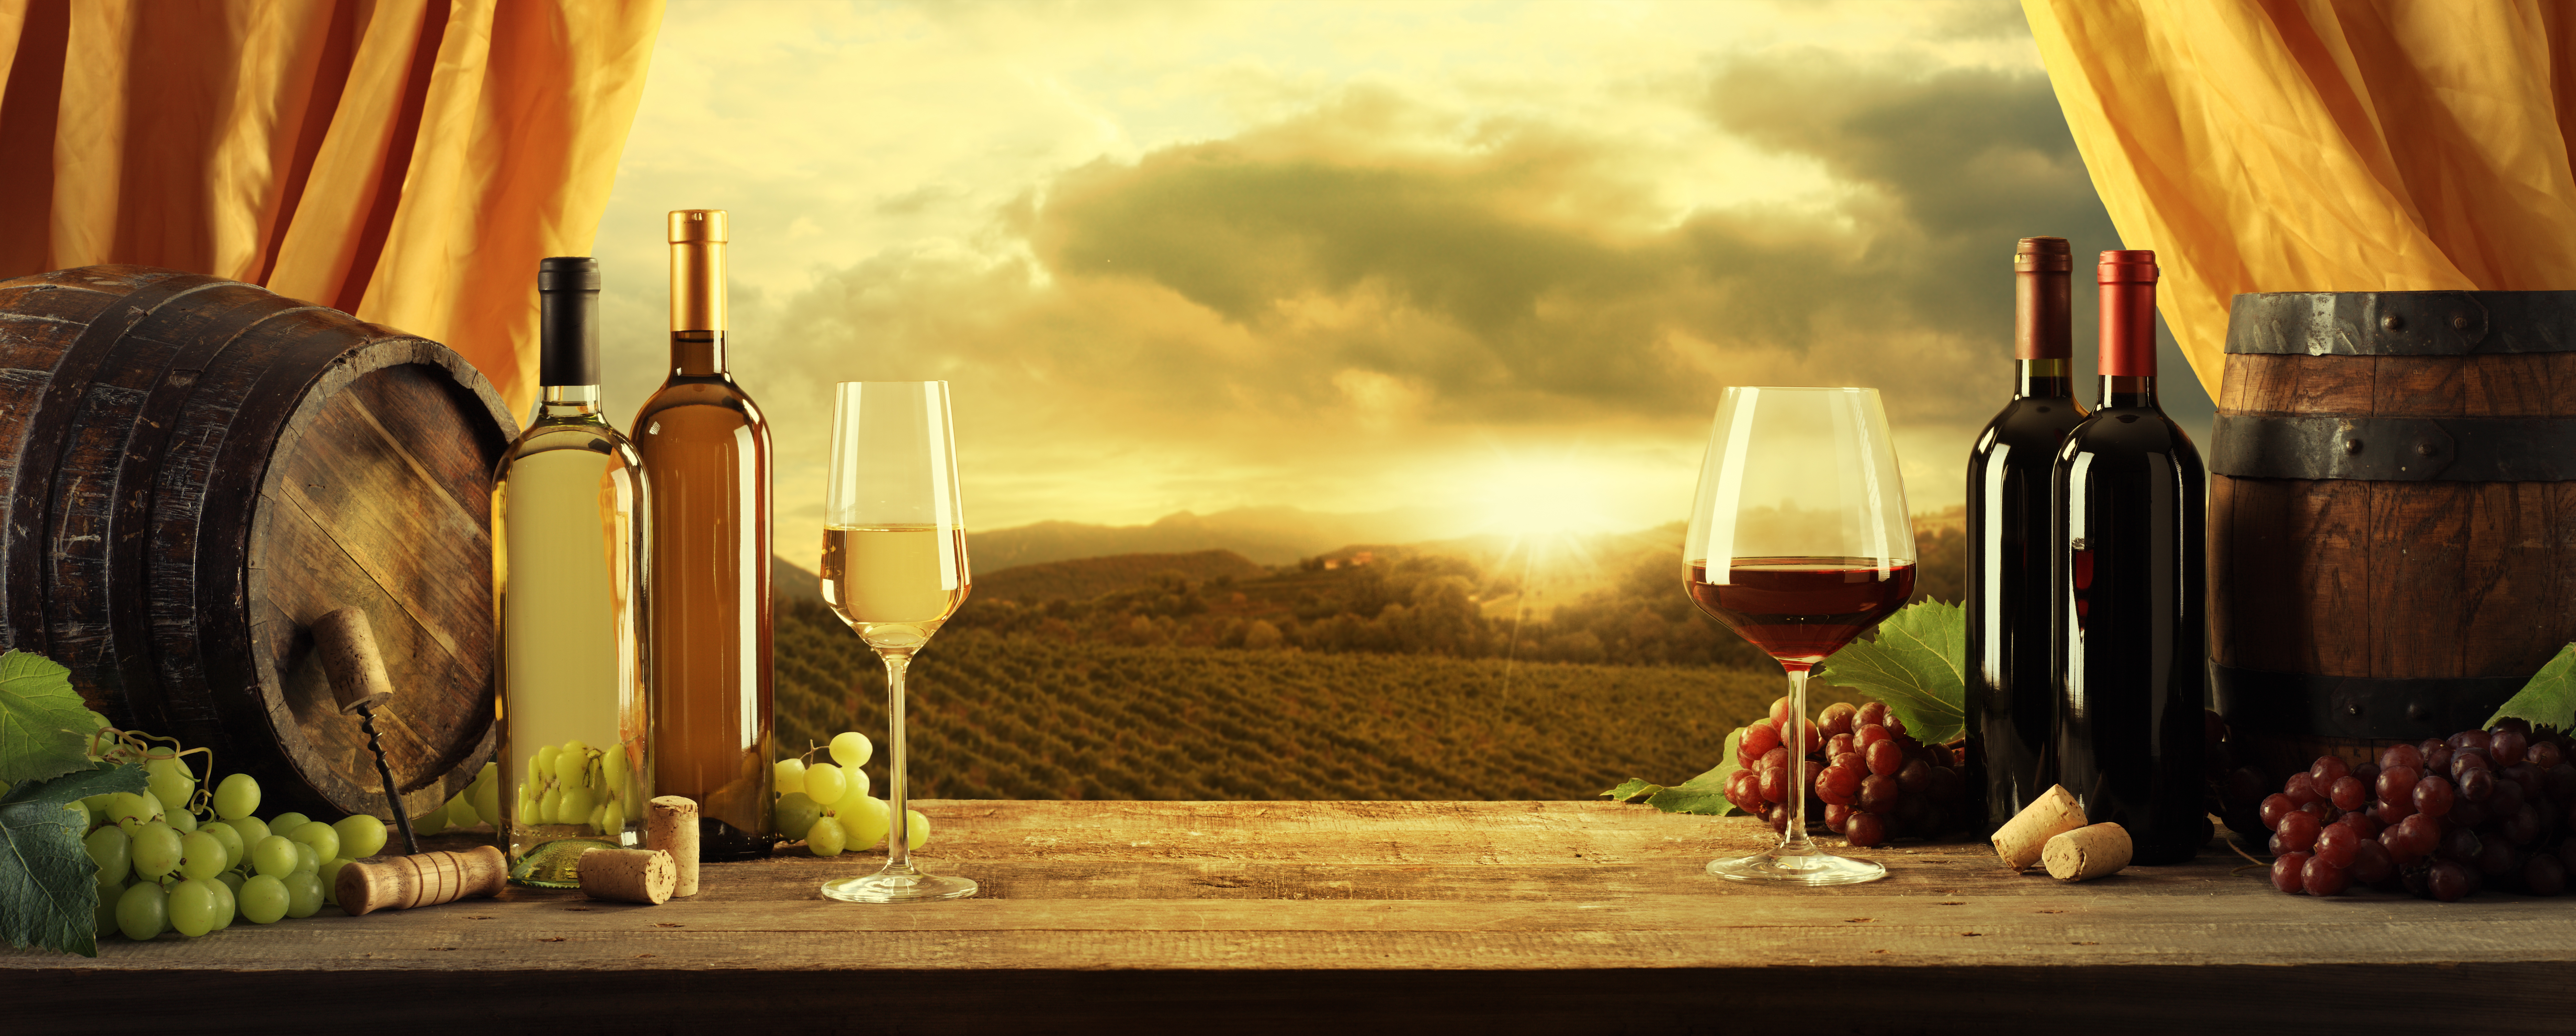 Říká se: „In vino veritas“ – „Ve víně je pravda“. Ale nejen to. Ve víně se prý ukrývá i zdraví. Jaká je ale reálná pravda o víně? Jde víno a zdraví dohromady? Je víno skutečně elixírem zdraví, jak se o něm říká?